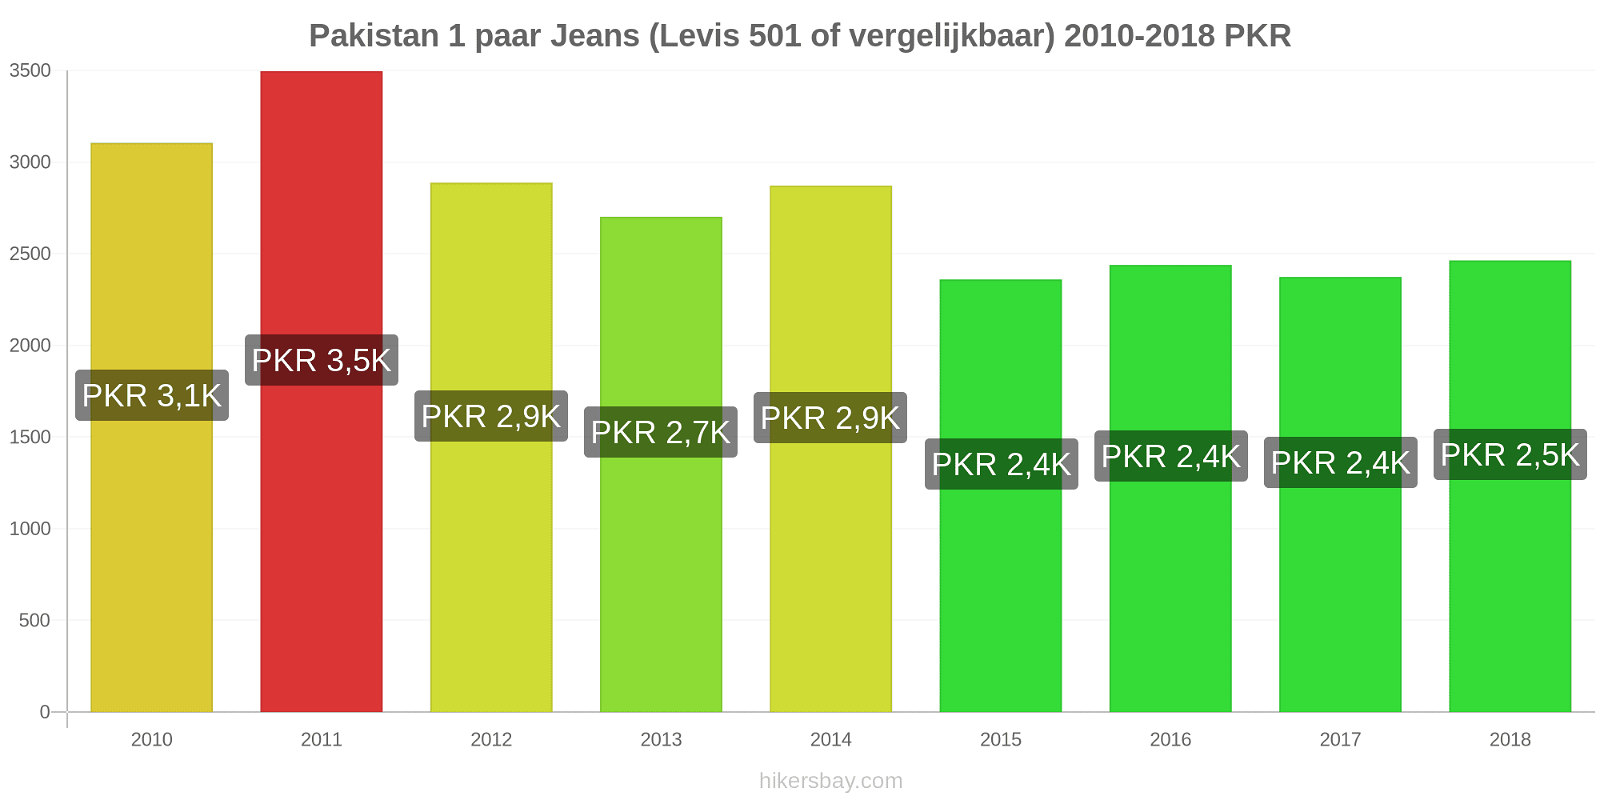 Pakistan prijswijzigingen 1 paar jeans (Levis 501 of vergelijkbaar) hikersbay.com